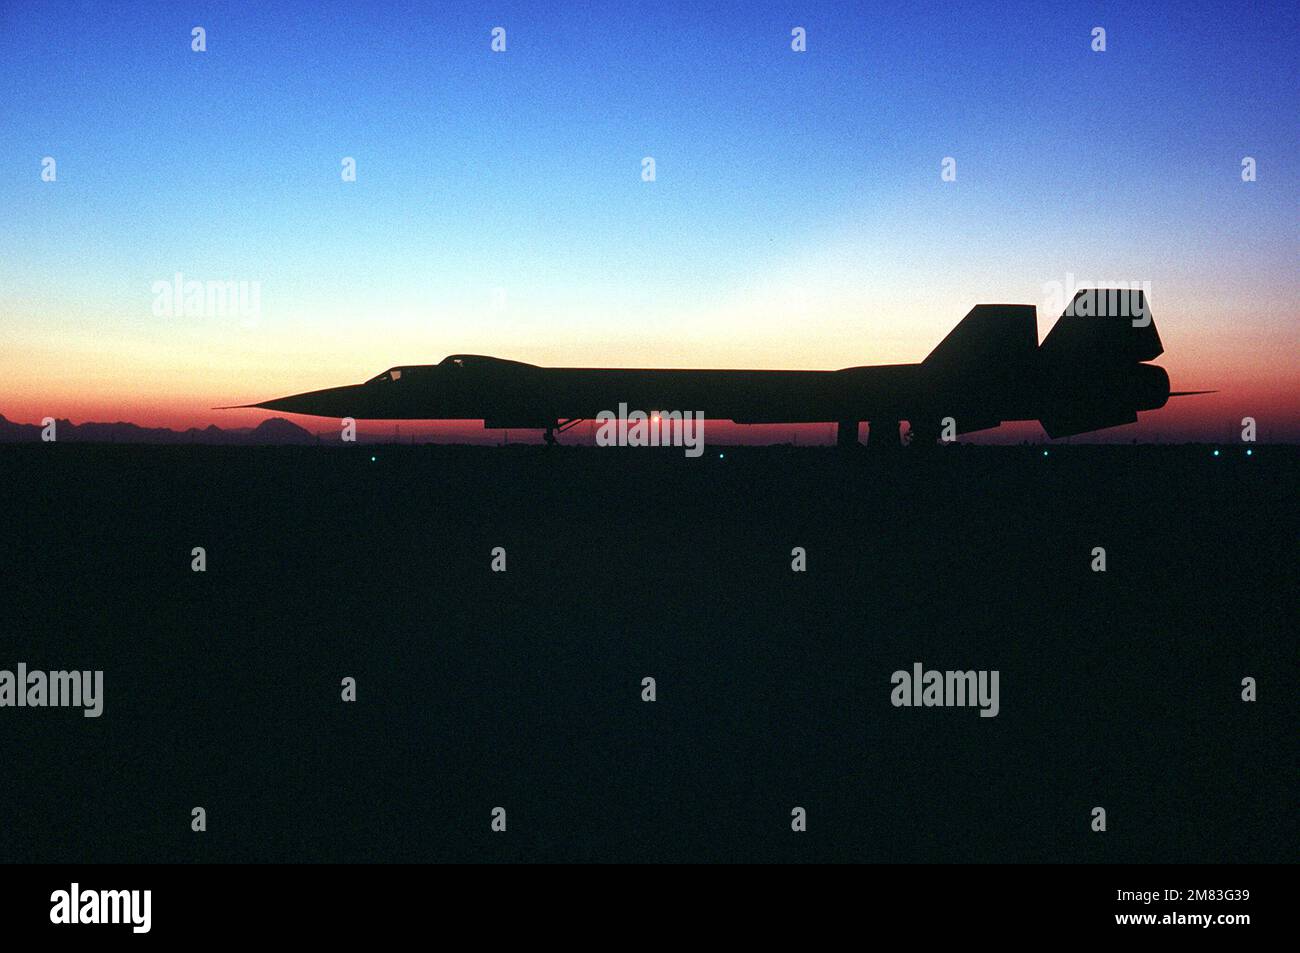 Eine linksseitige Silhouette eines strategischen Aufklärungsflugzeugs SR-71, das auf einer Fluglinie geparkt ist. Das Flugzeug ist bekannt als „Blackbird“. Land: Unbekannt Stockfoto